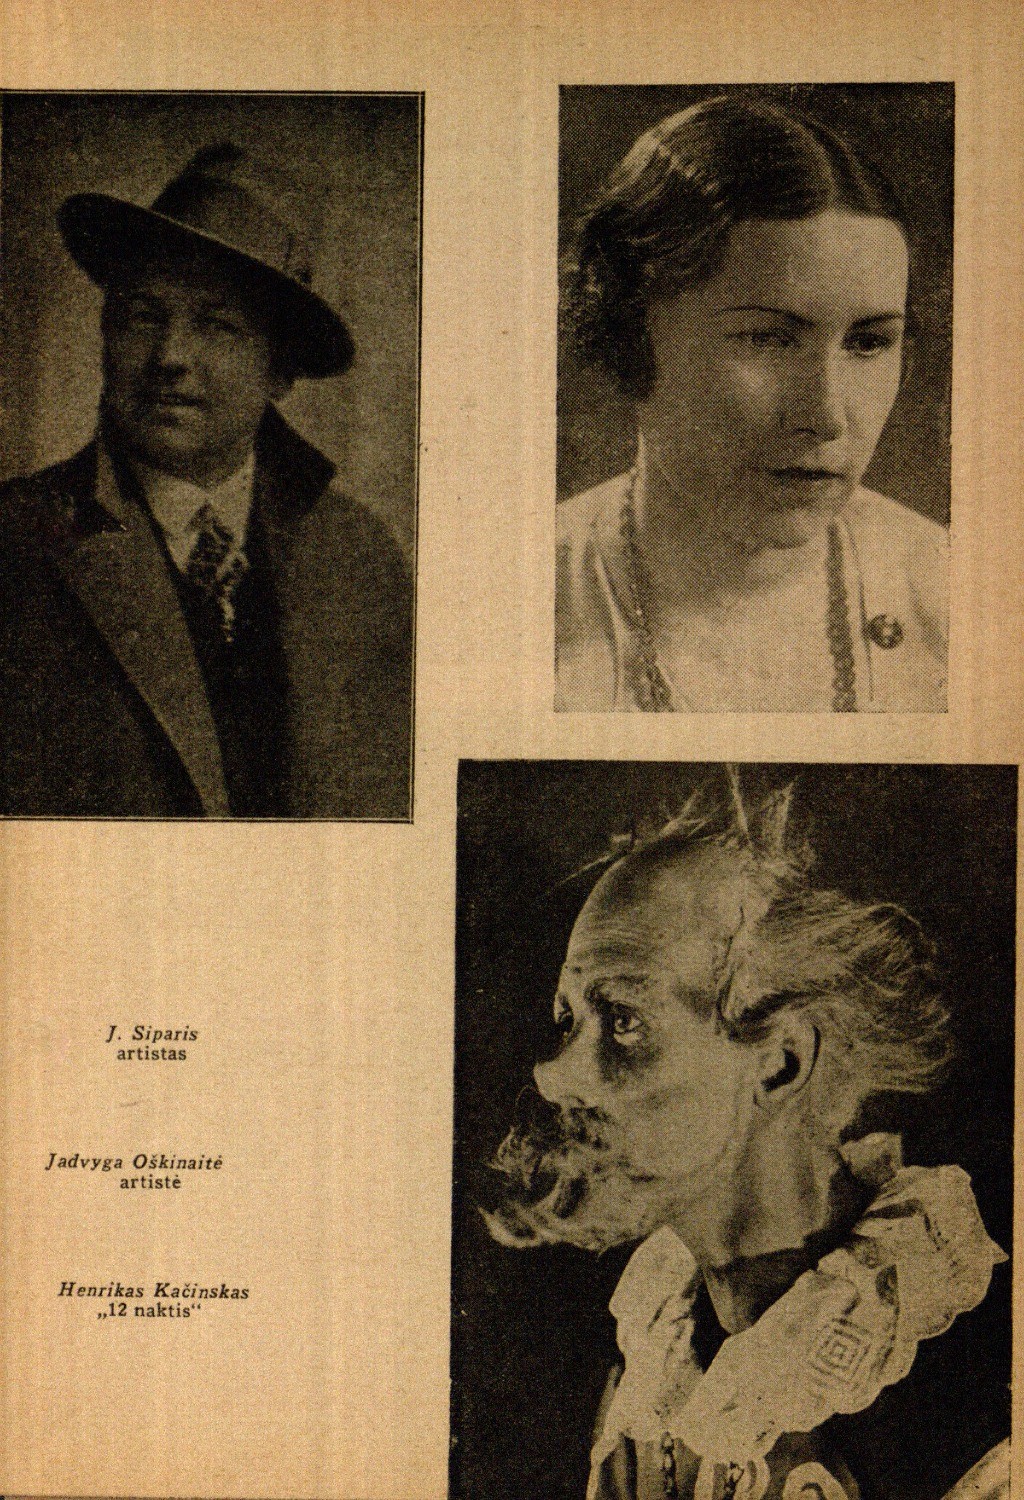 J. Siparis, artistas, Jadvyga Oškinaitė, artistė, Henrikas Kačinskas „12 naktis“ // Meno dienos. – 1936, Nr. 18, p. 7.